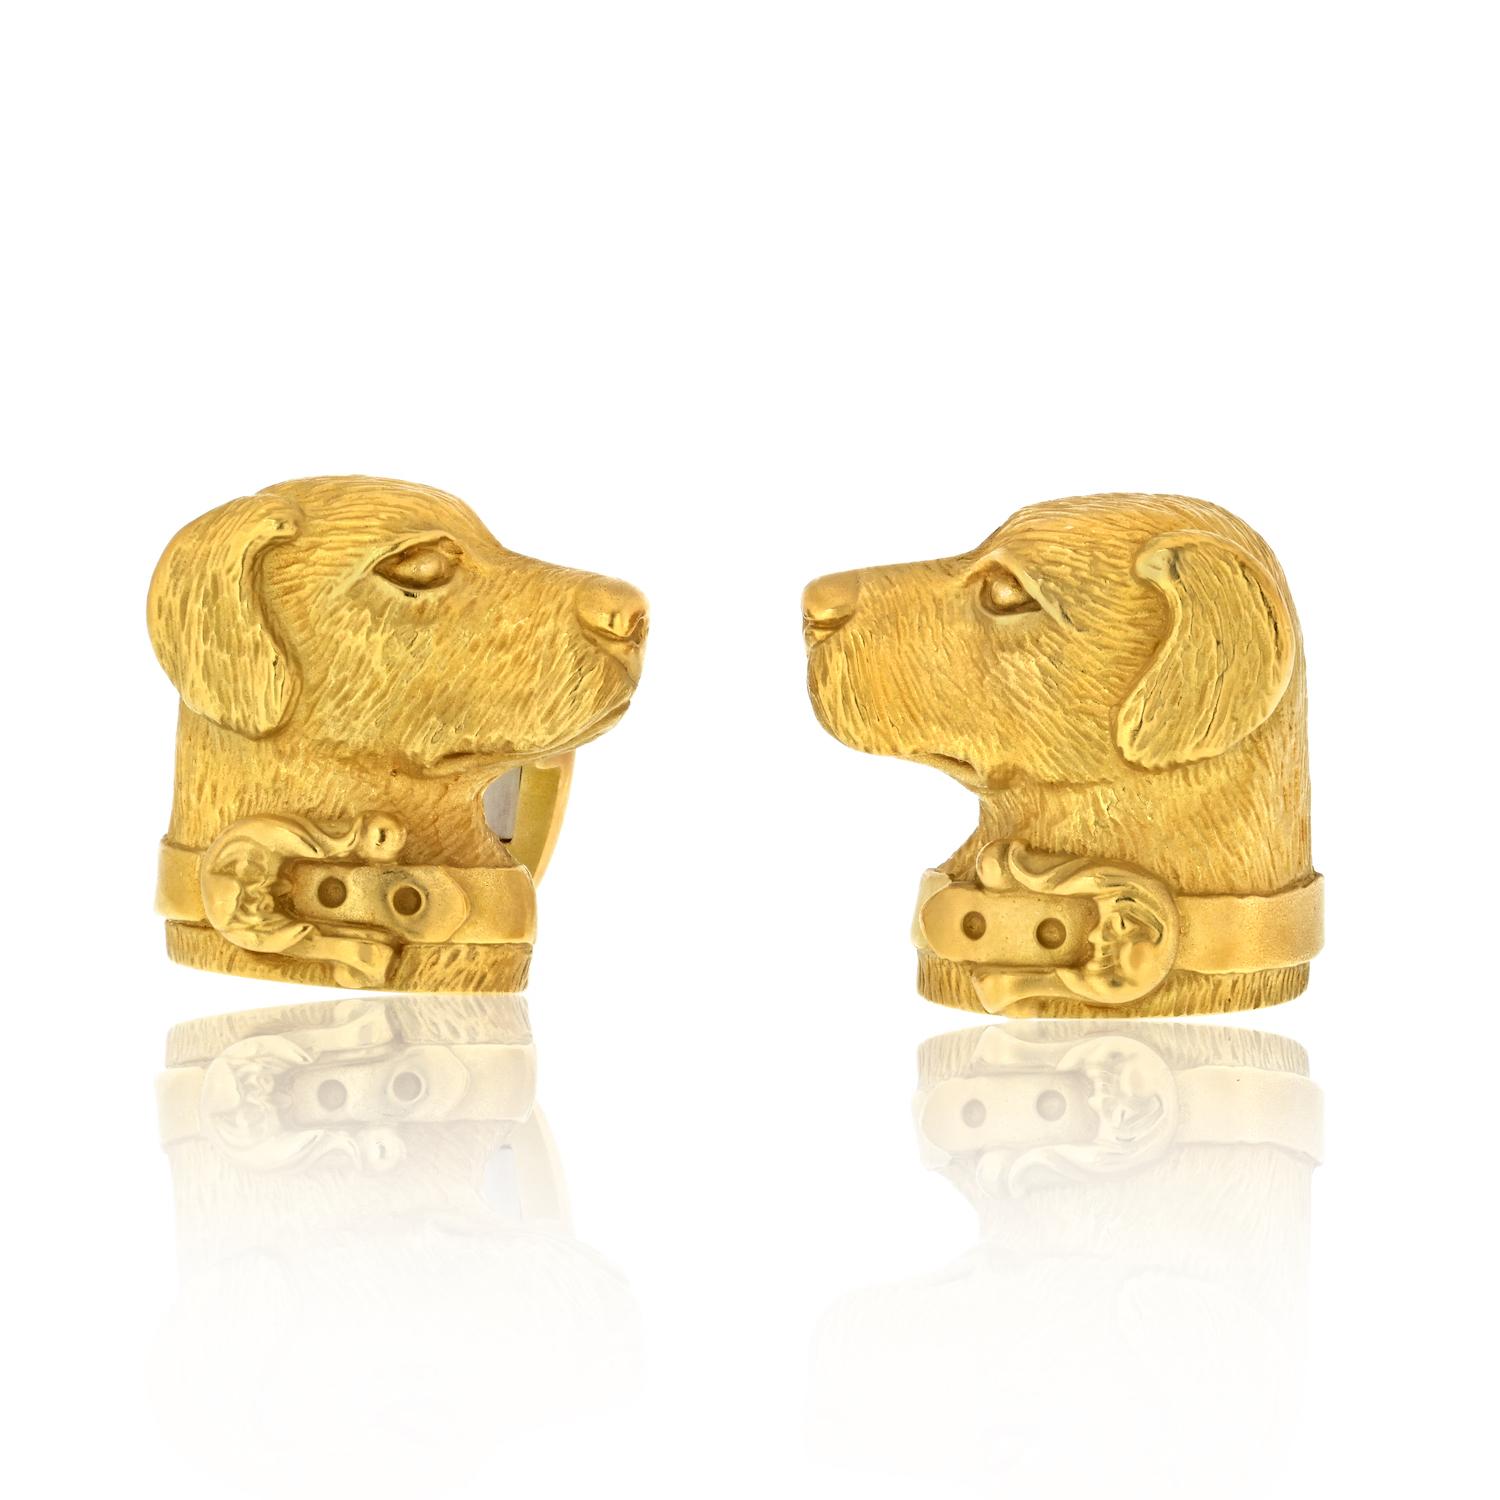 Diese exquisiten KIESELSTEIN-CORD-Manschettenknöpfe zeigen Labradorhunde mit eleganten Halsbändern, die kunstvoll aus strukturiertem 18-karätigem Gelbgold gefertigt sind. Diese Manschettenknöpfe, die um 1989 in den Vereinigten Staaten hergestellt